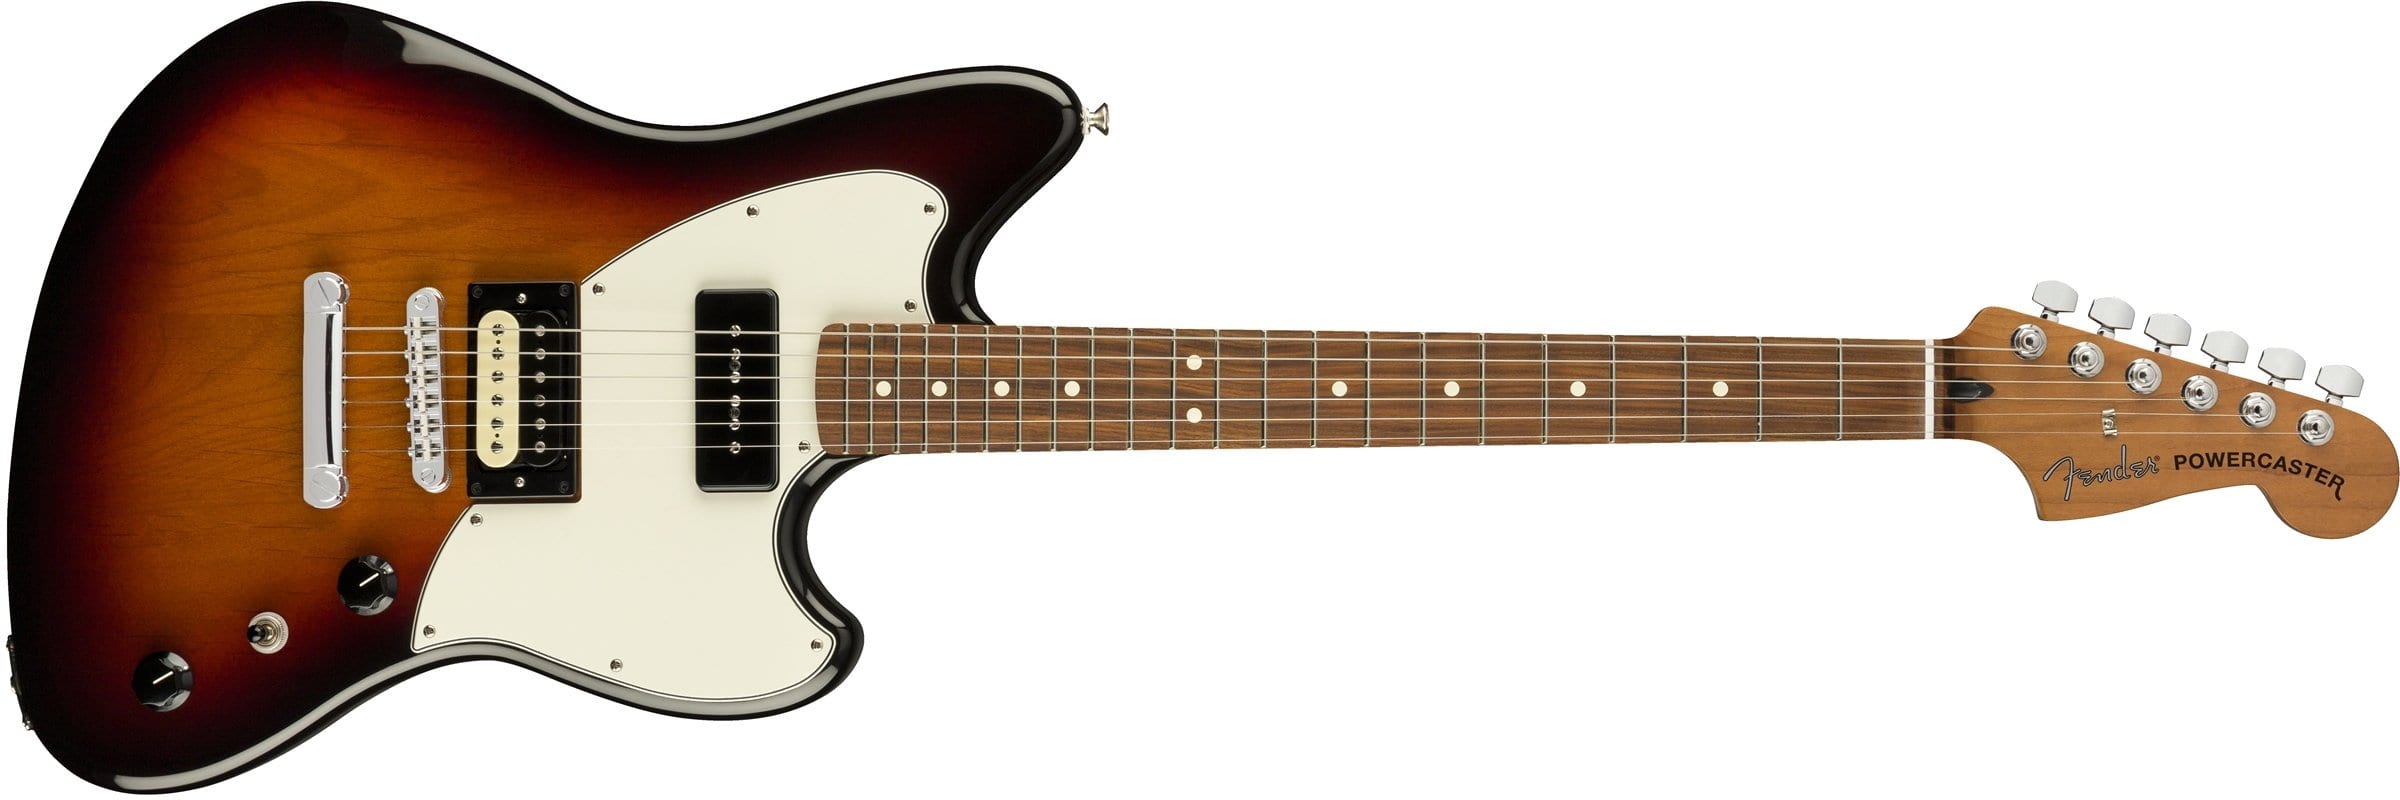 Fender Alternate Reality Powercaster in 3-Colour Burst